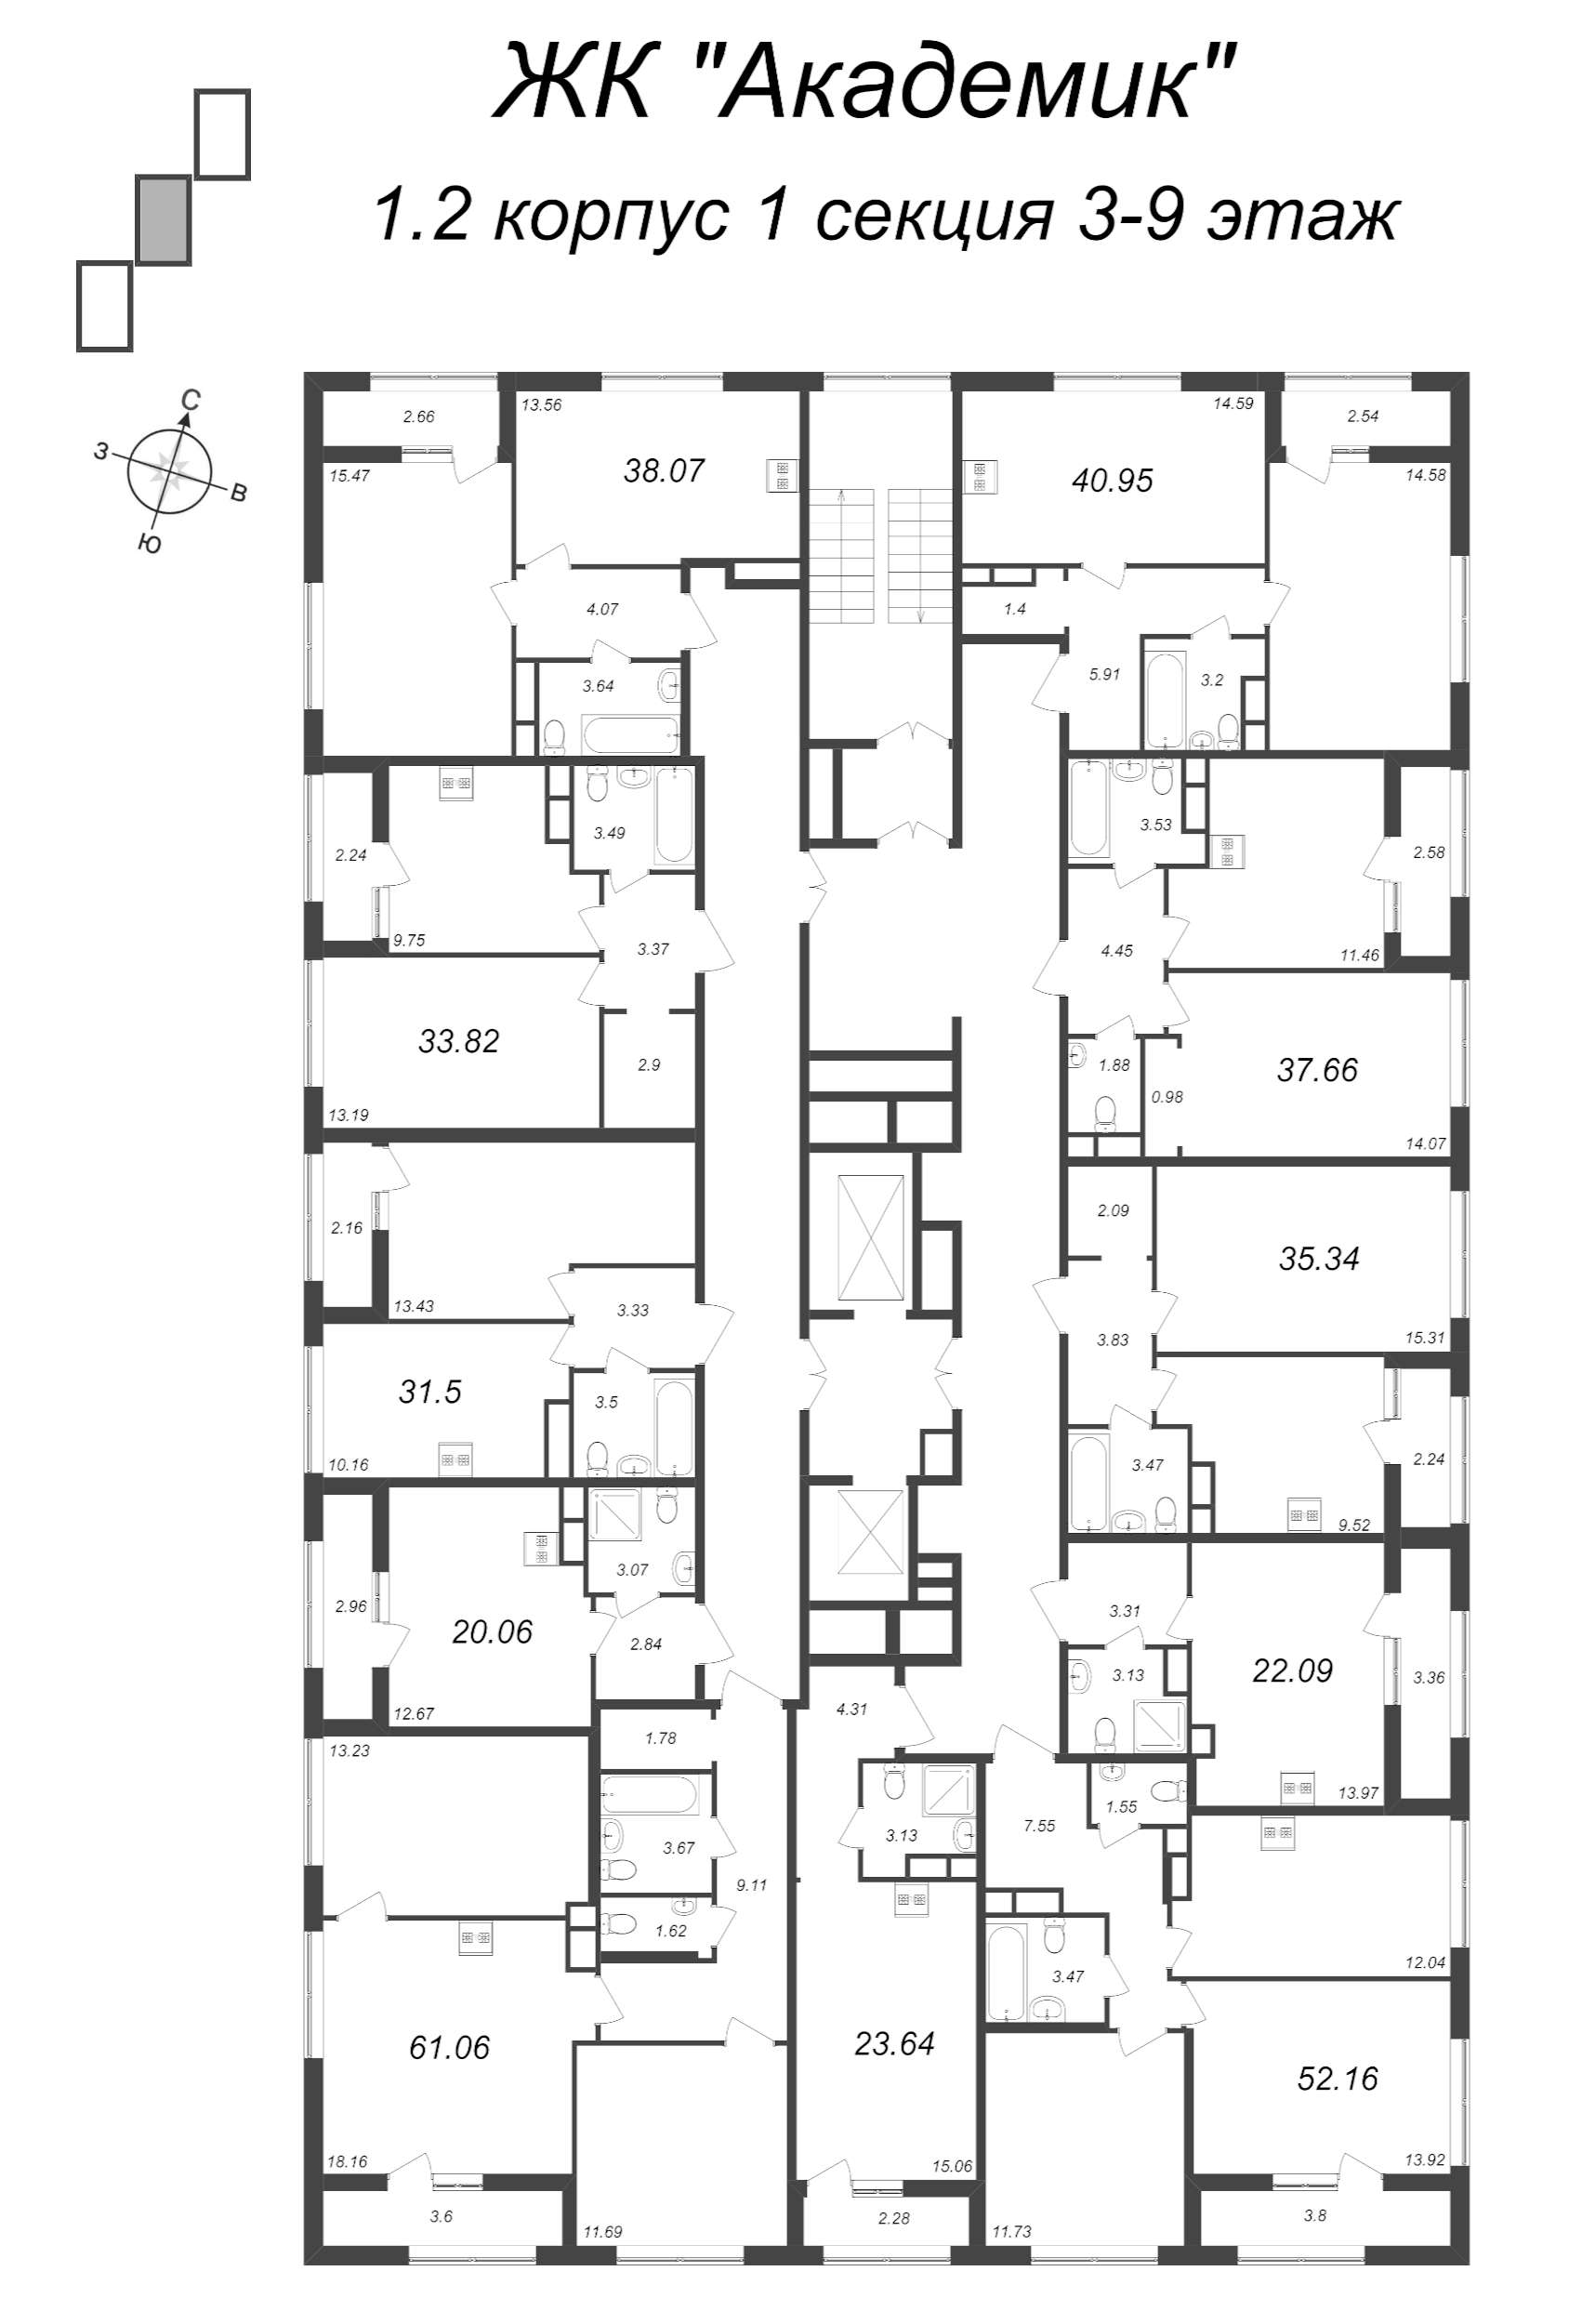 Квартира-студия, 23.64 м² в ЖК "Академик" - планировка этажа